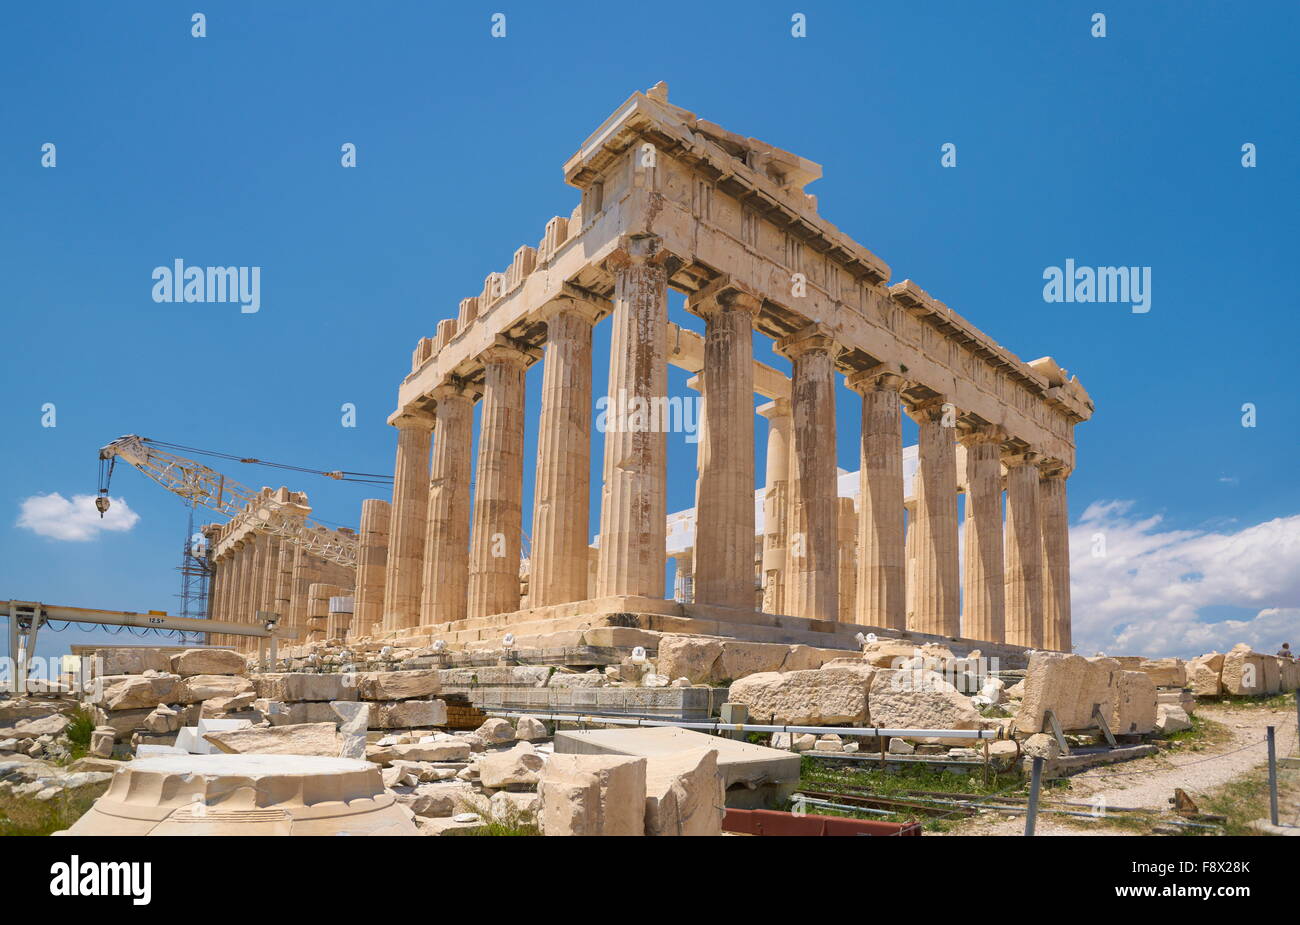 Athens - Acropolis, Parthenon Temple, Greece Stock Photo